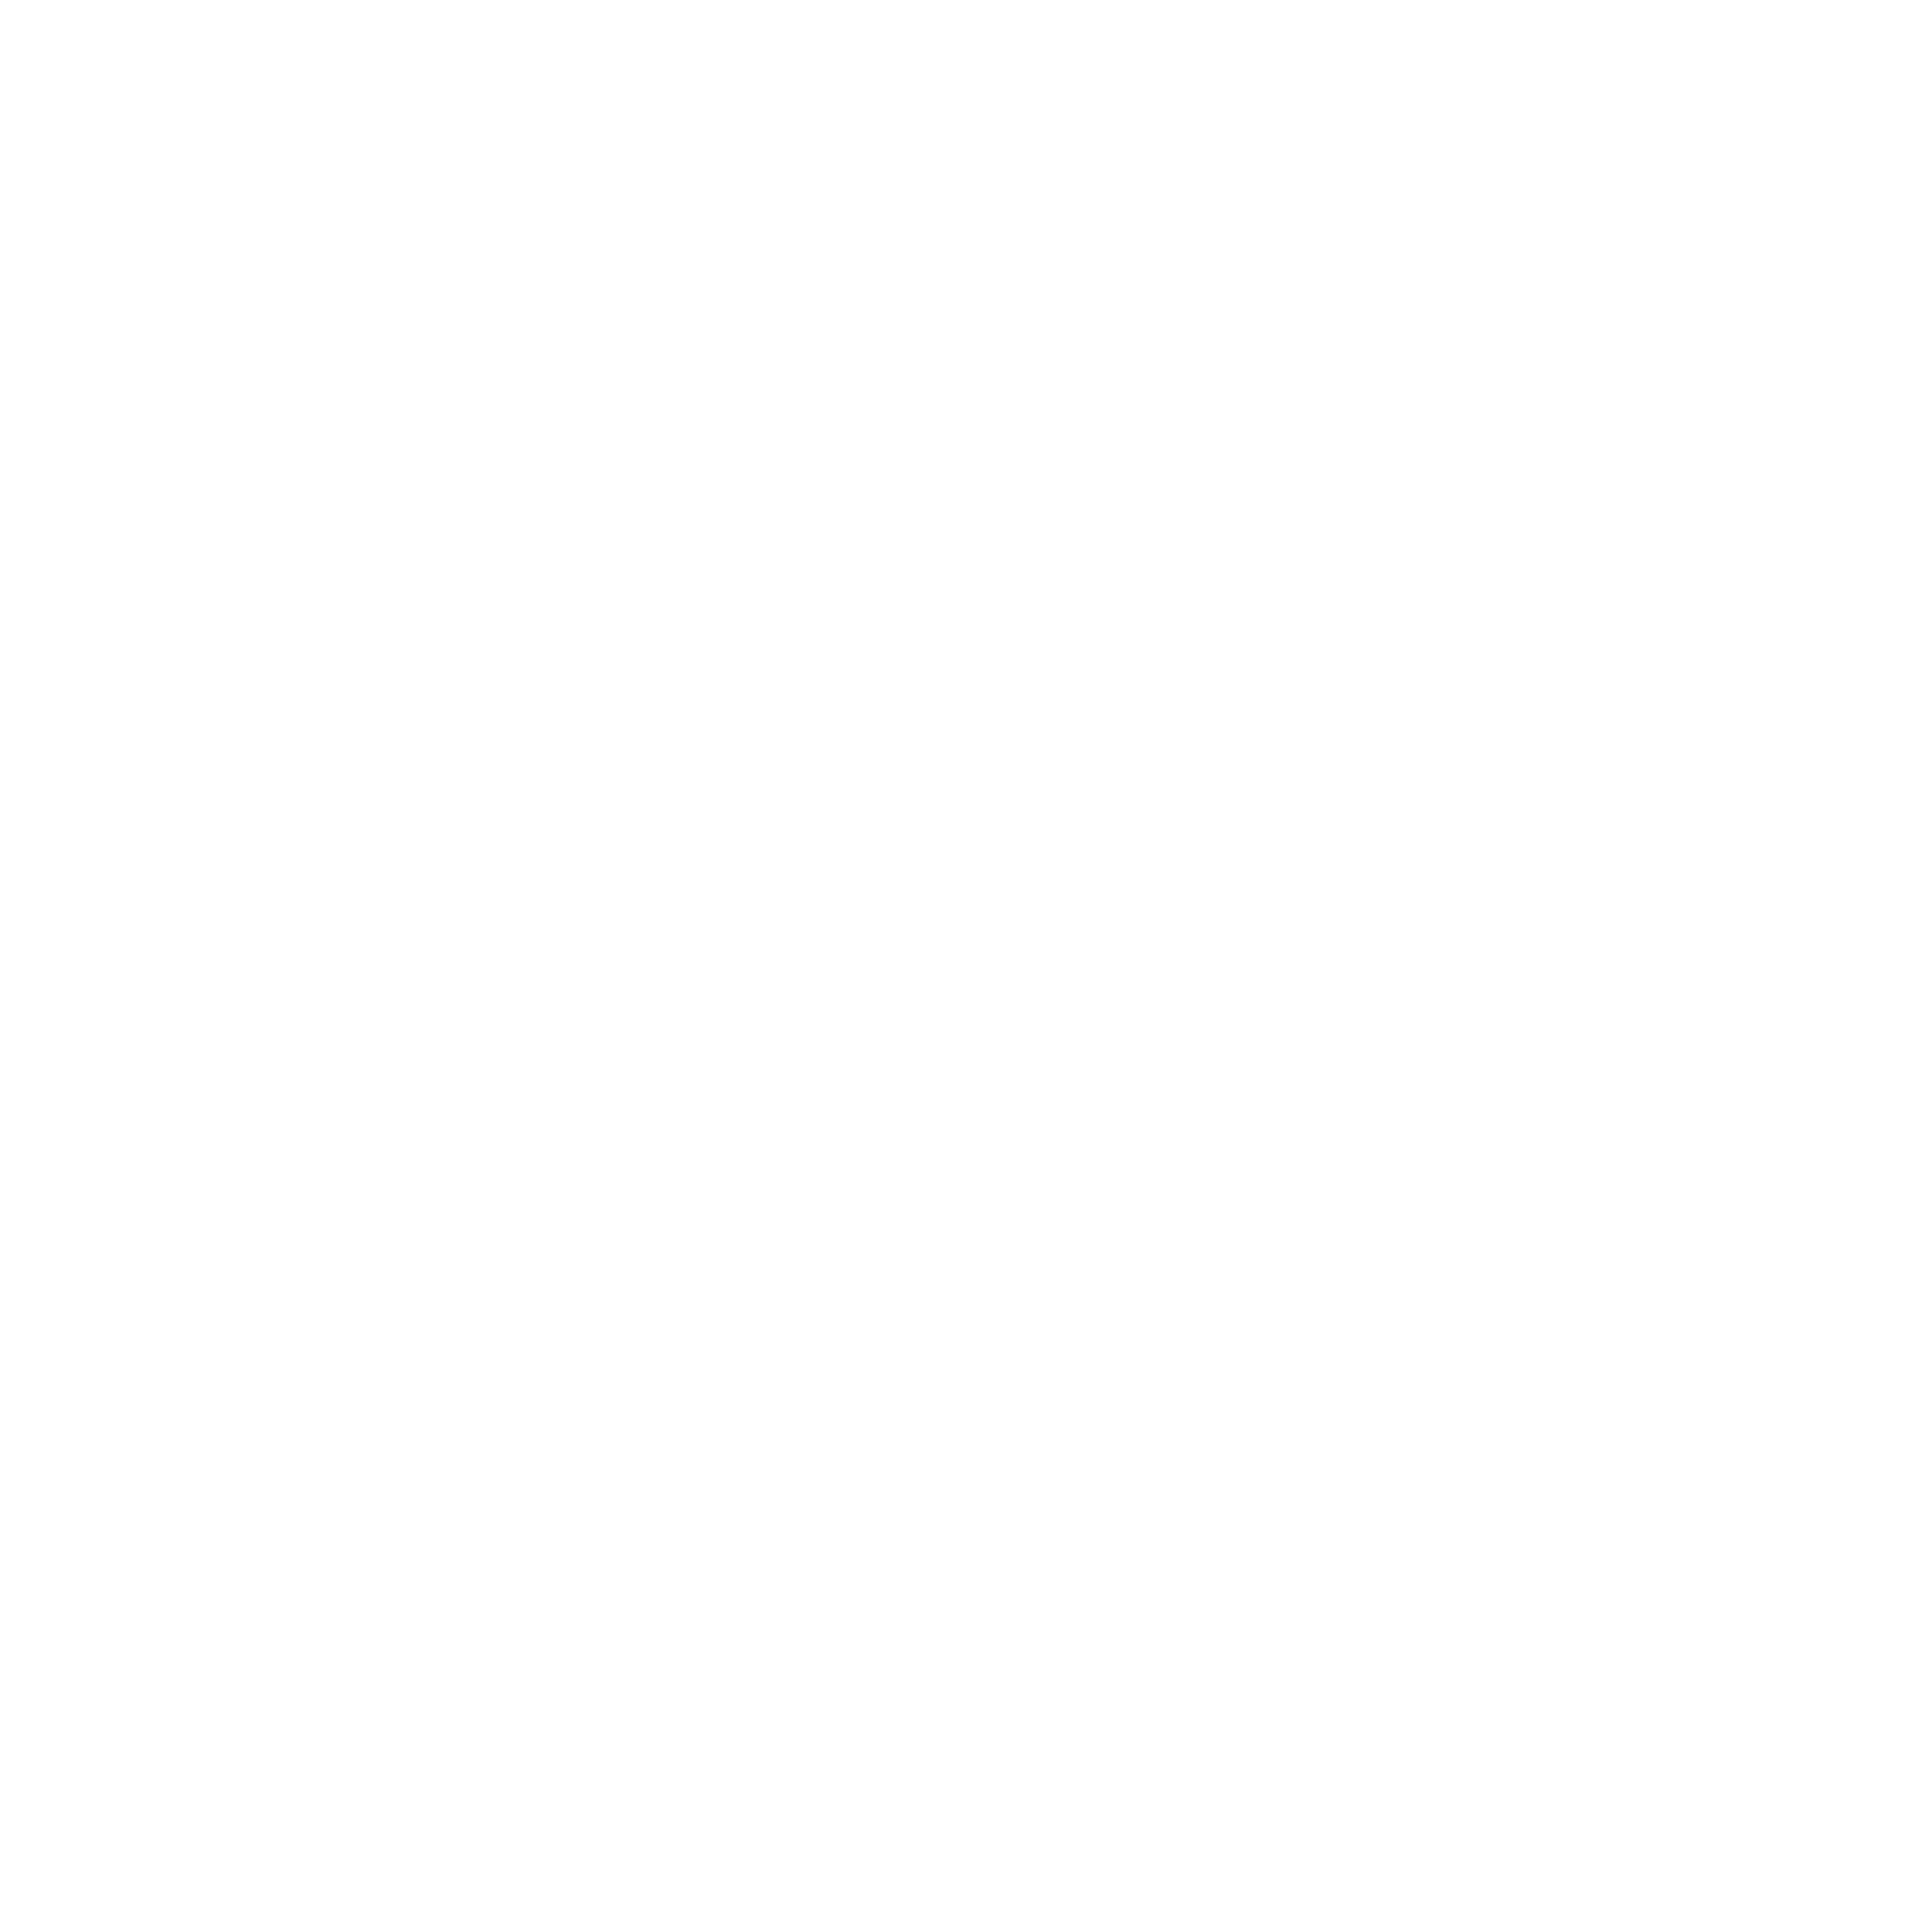 bbc-2